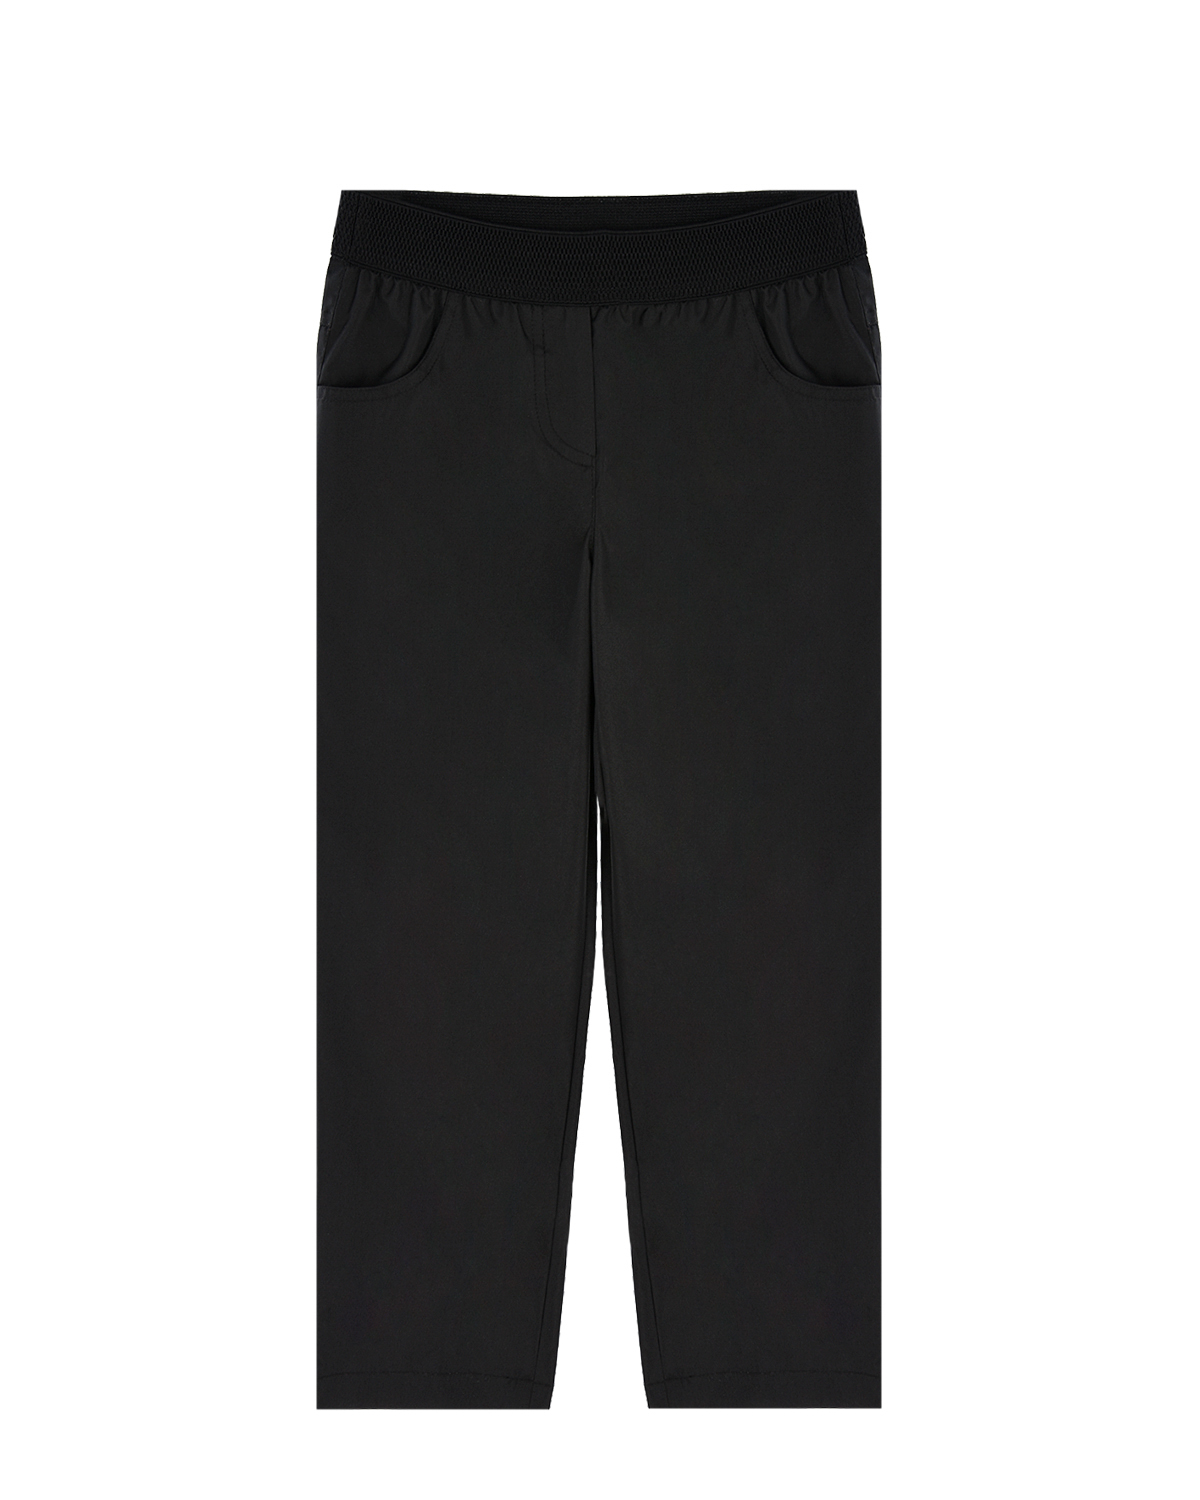 Черные утепленные брюки Dan Maralex детские, размер 116, цвет черный - фото 1